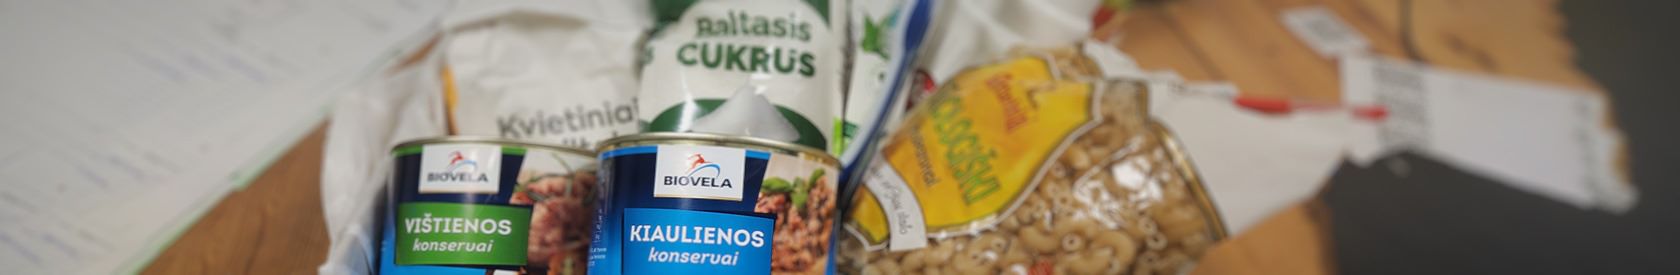 Kokius patiekalus baltarusių pabėgėliai gamina iš Maisto bankas tiekiamų produktų?